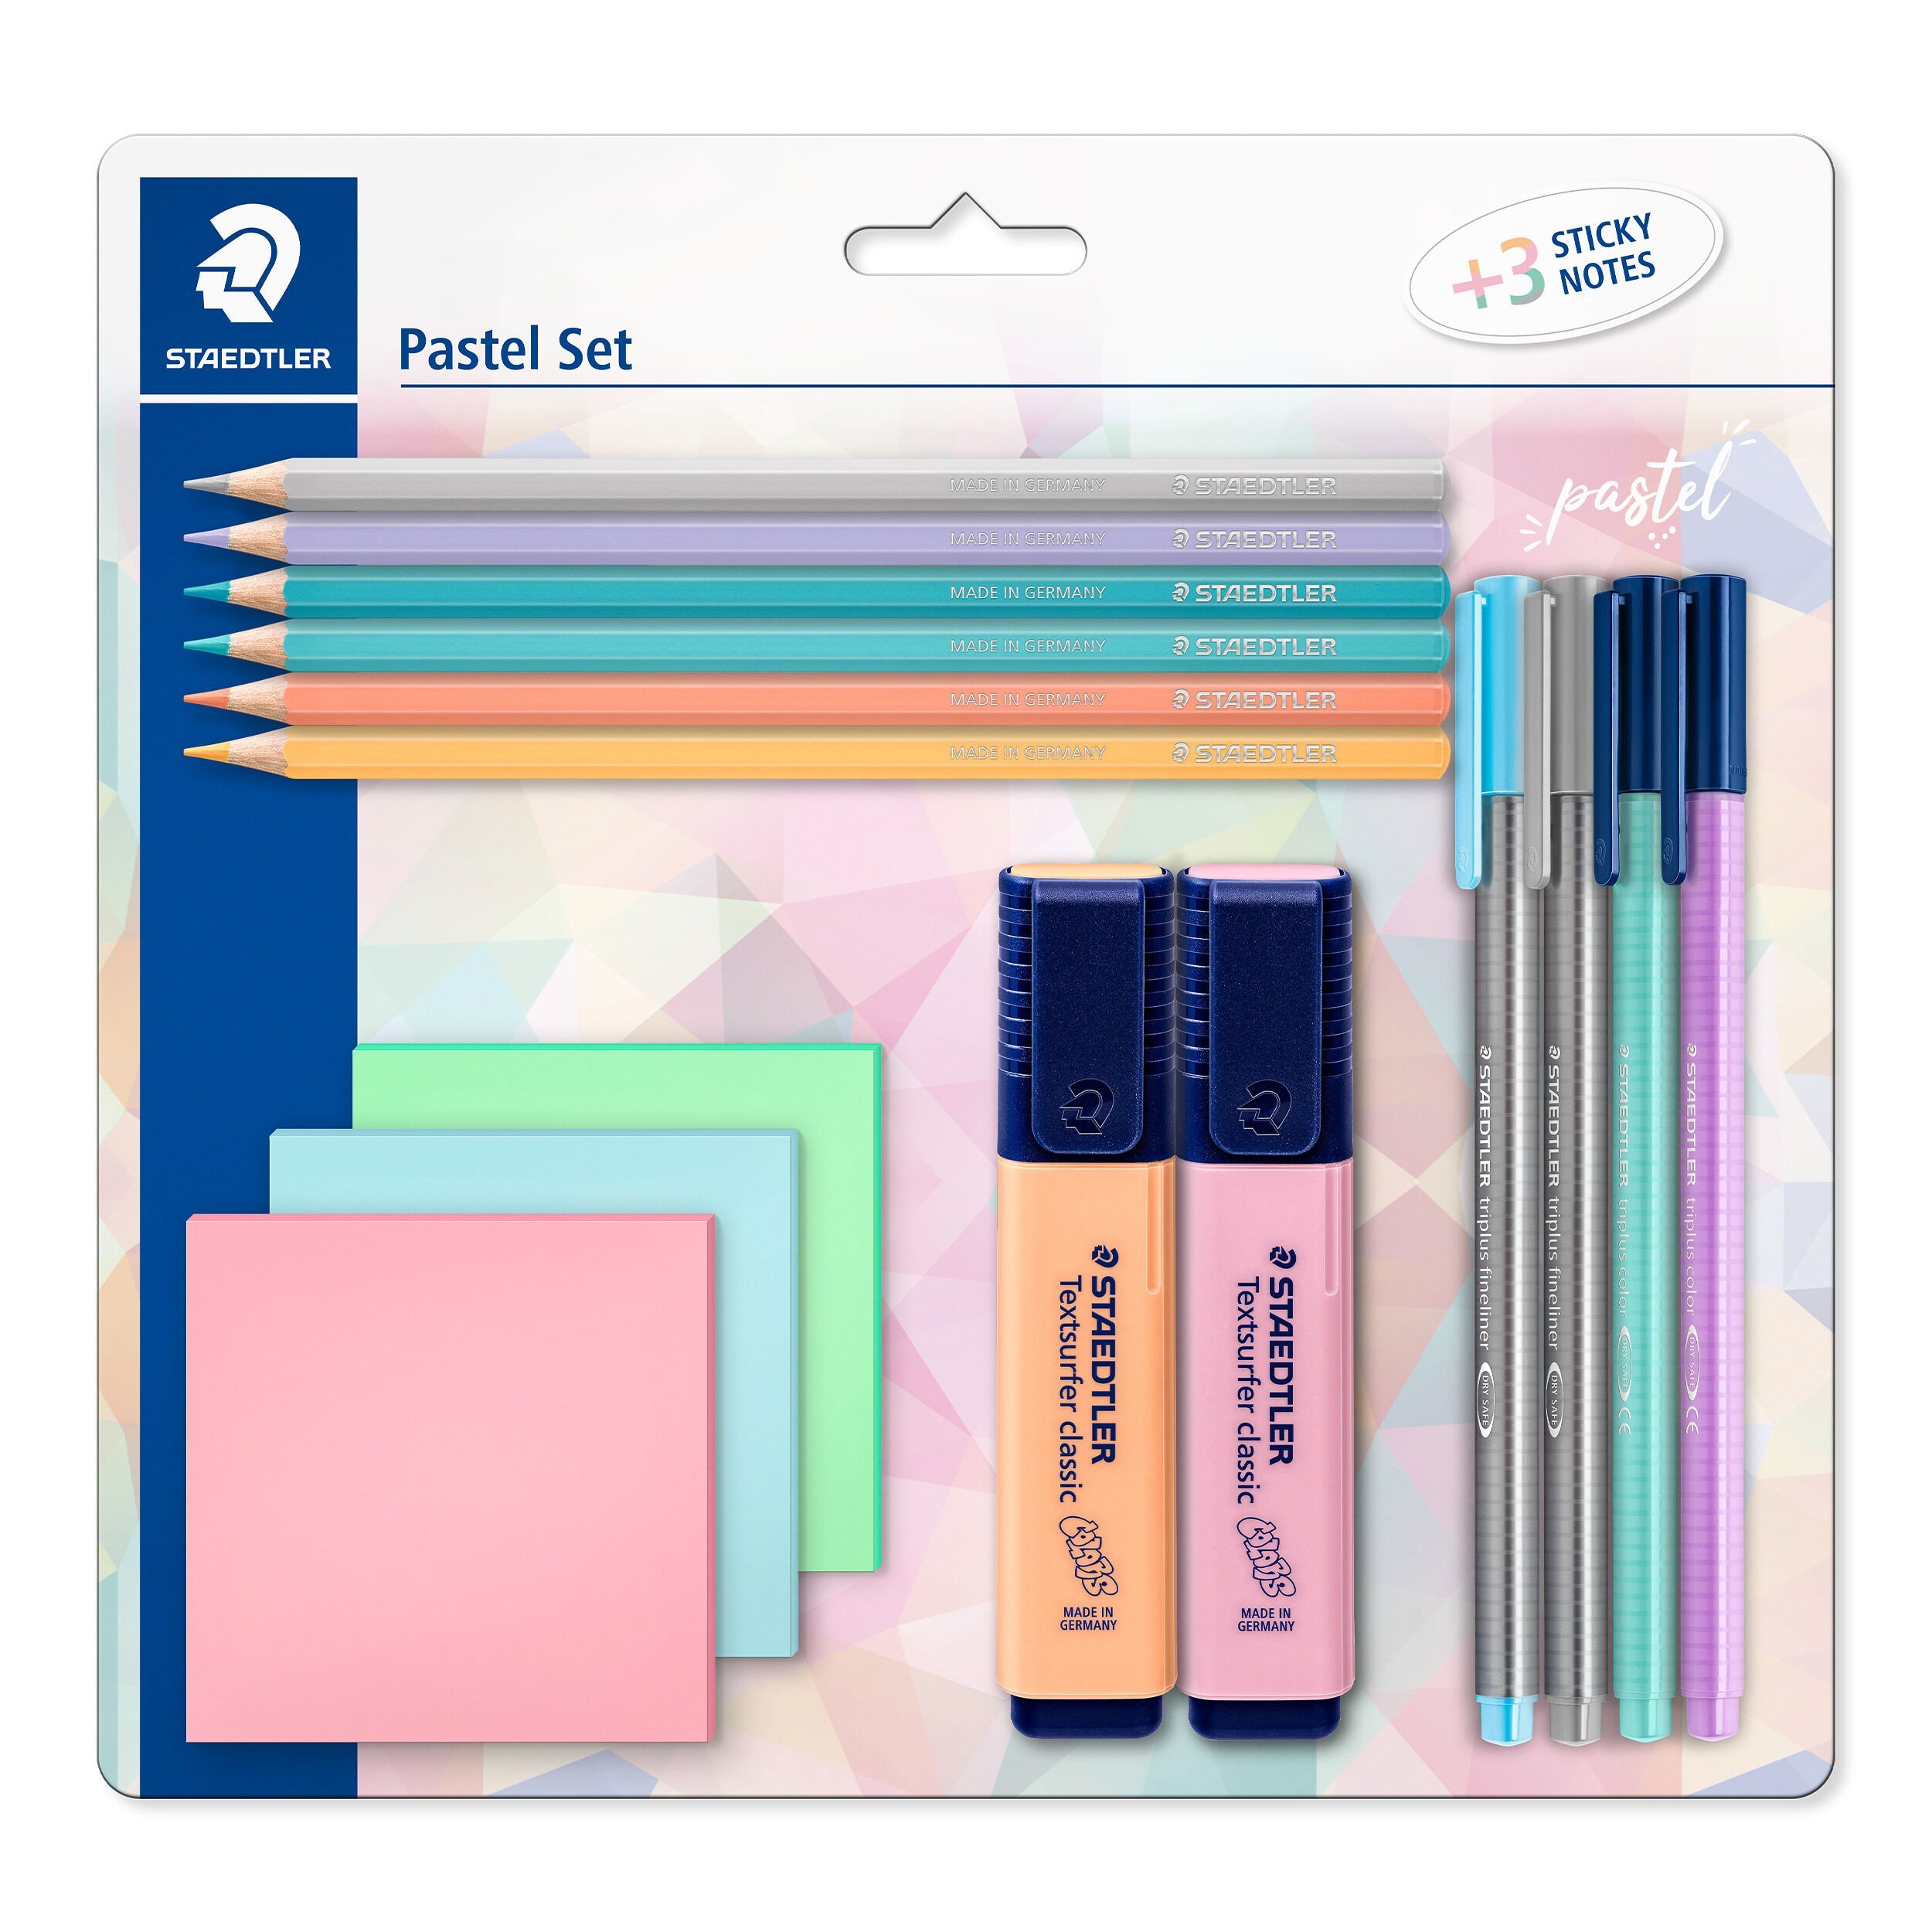 vervangen Torrent Uiterlijk Pastel Line - Pencils, Markers & Accessories in Pastel Colours | STAEDTLER